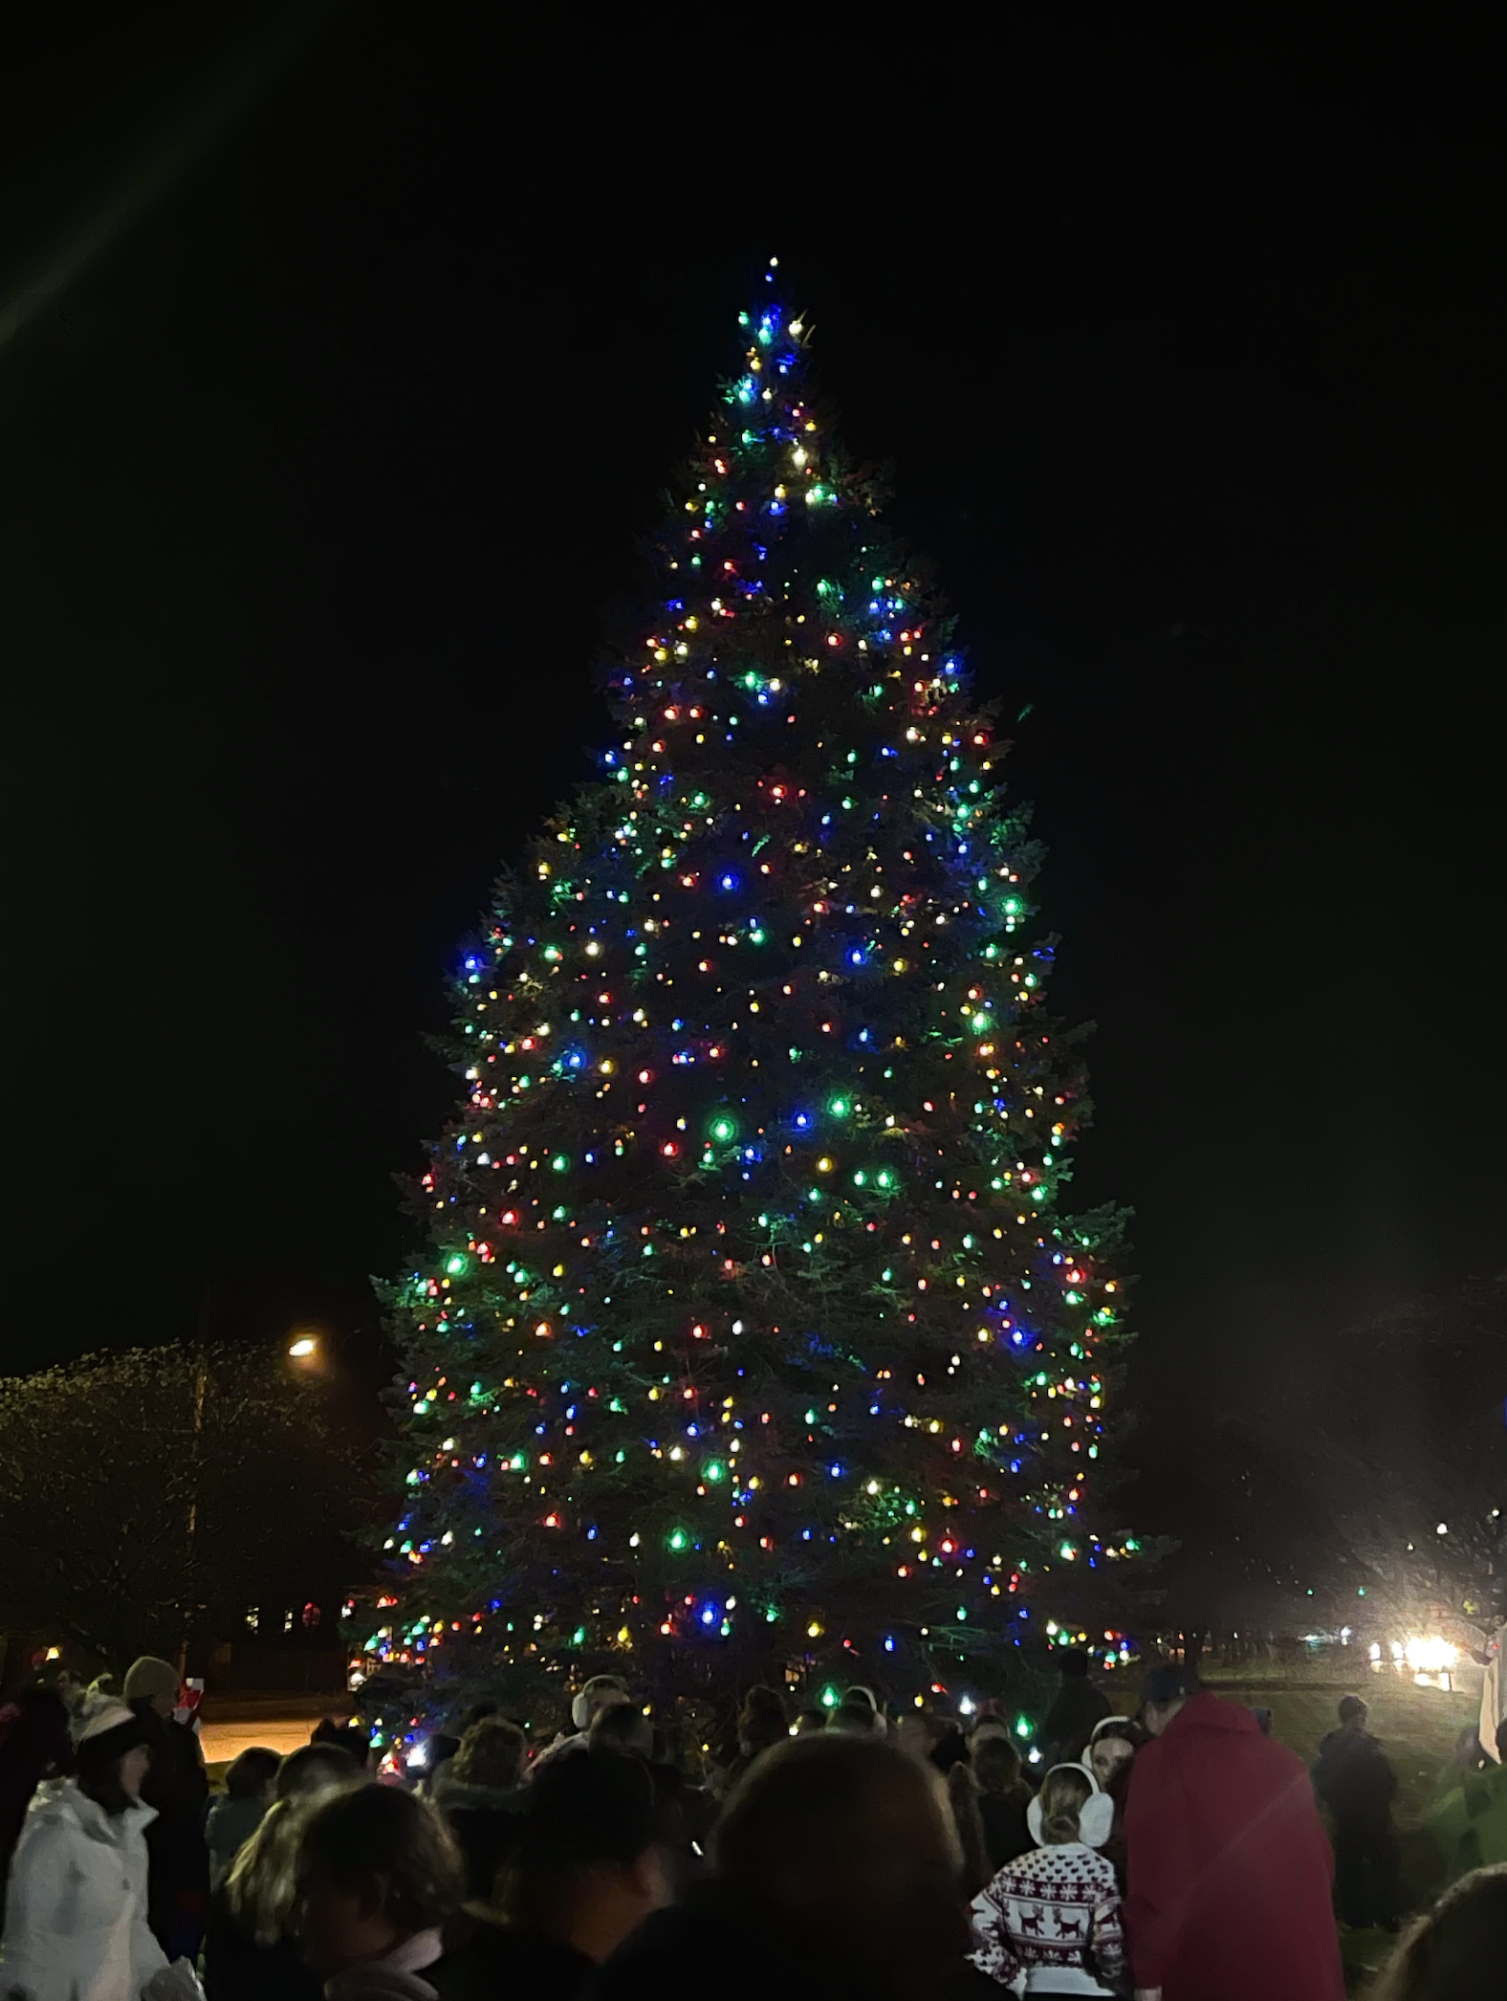 Annual Hamilton Tree Lighting Kicks off December